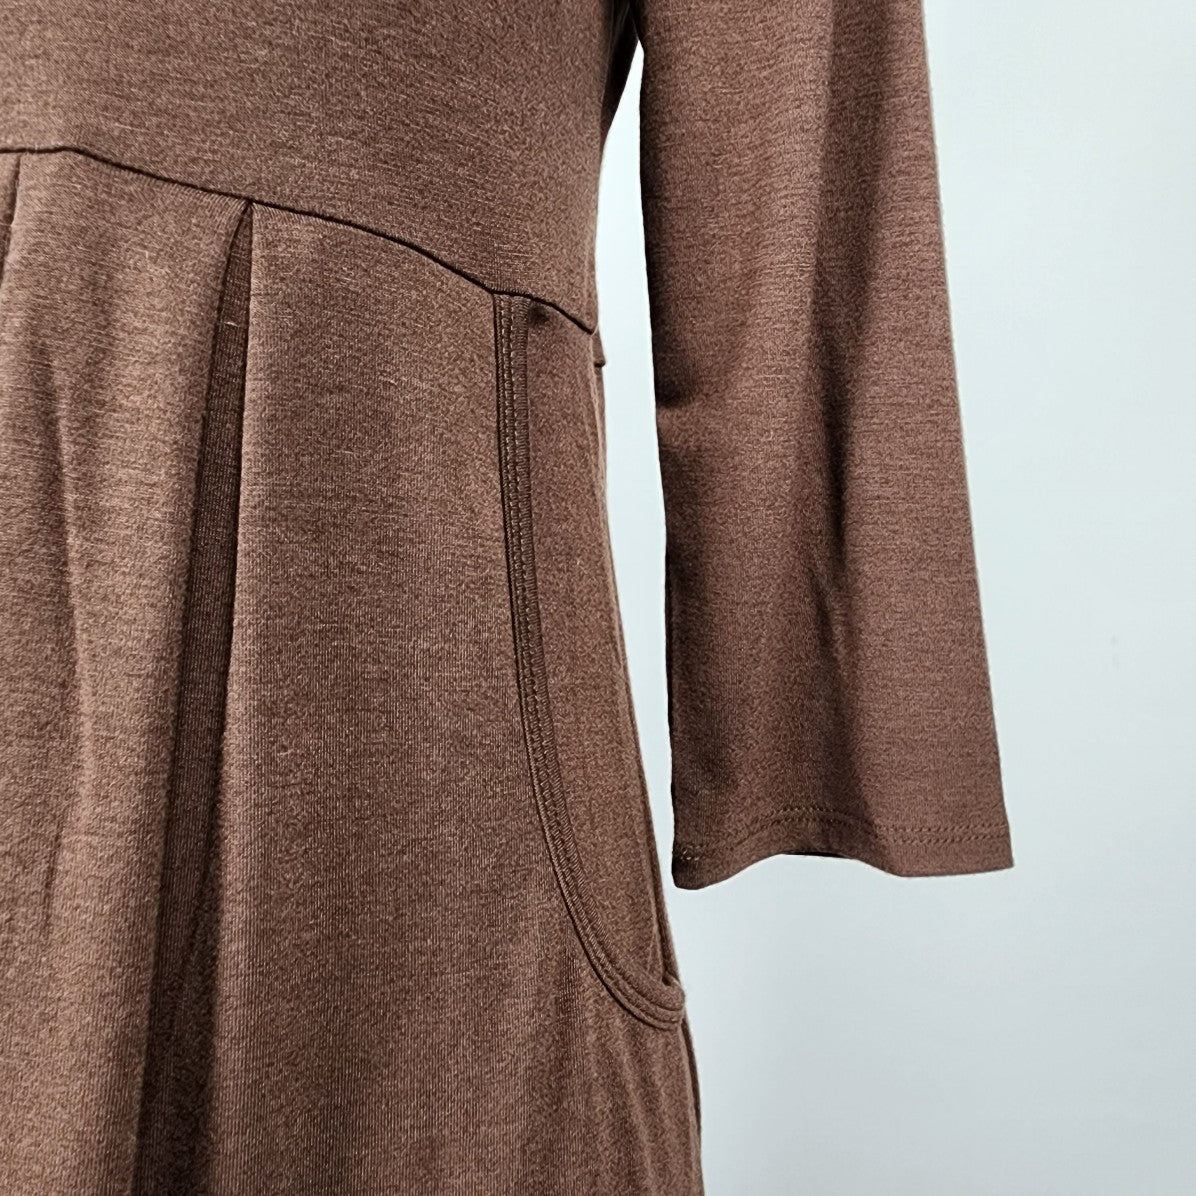 Zenana Premium Brown Long Sleeve Dress Size M/L